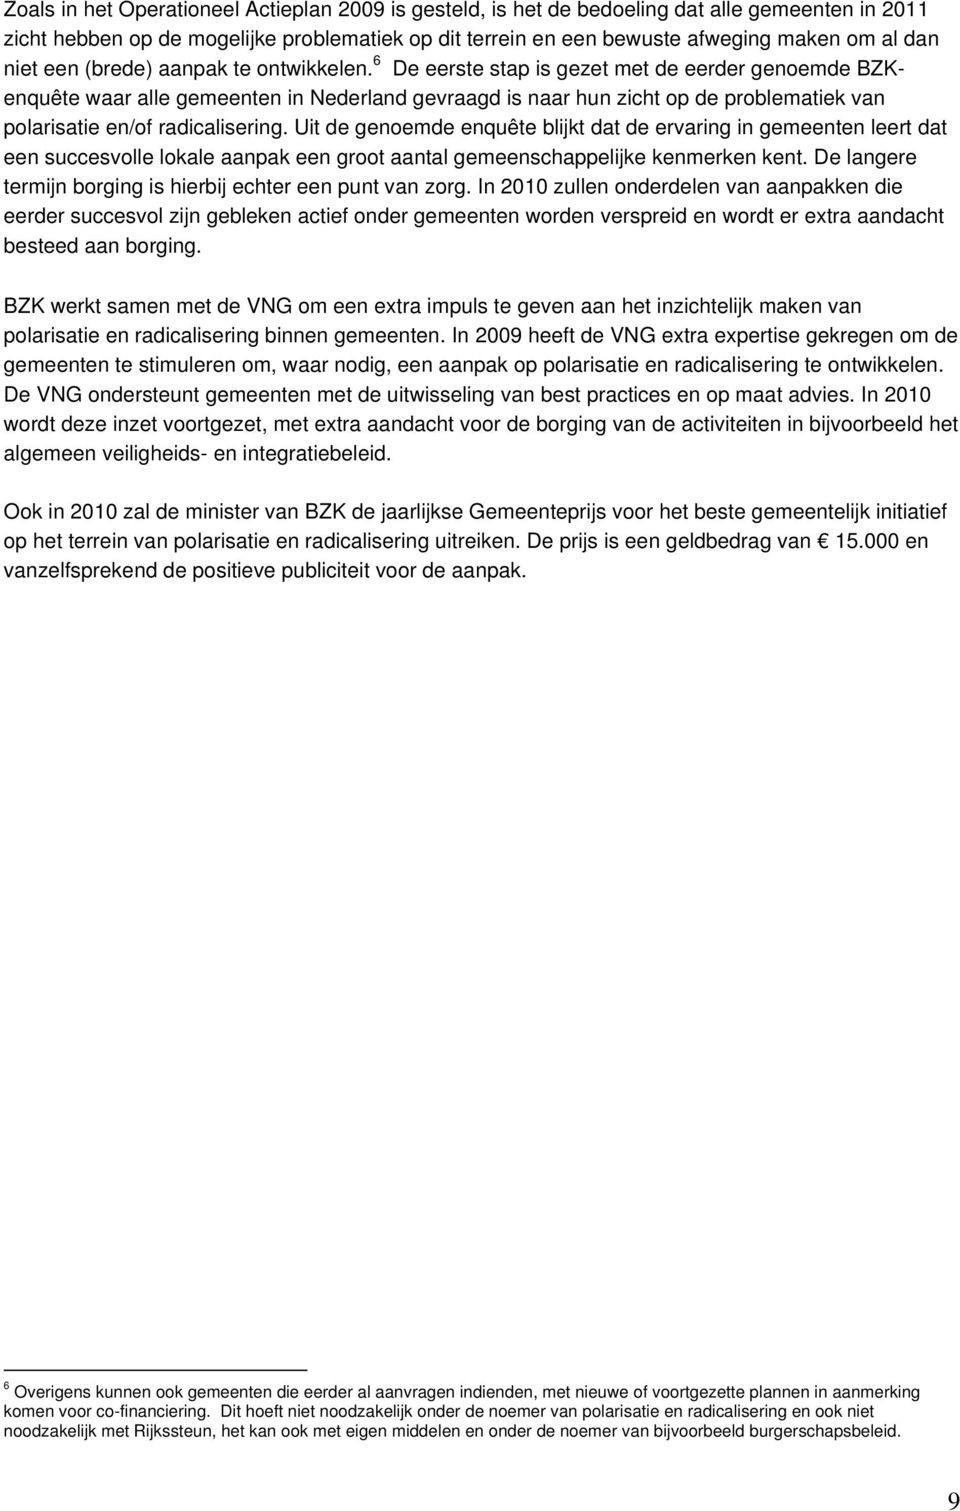 6 De eerste stap is gezet met de eerder genoemde BZKenquête waar alle gemeenten in Nederland gevraagd is naar hun zicht op de problematiek van polarisatie en/of radicalisering.